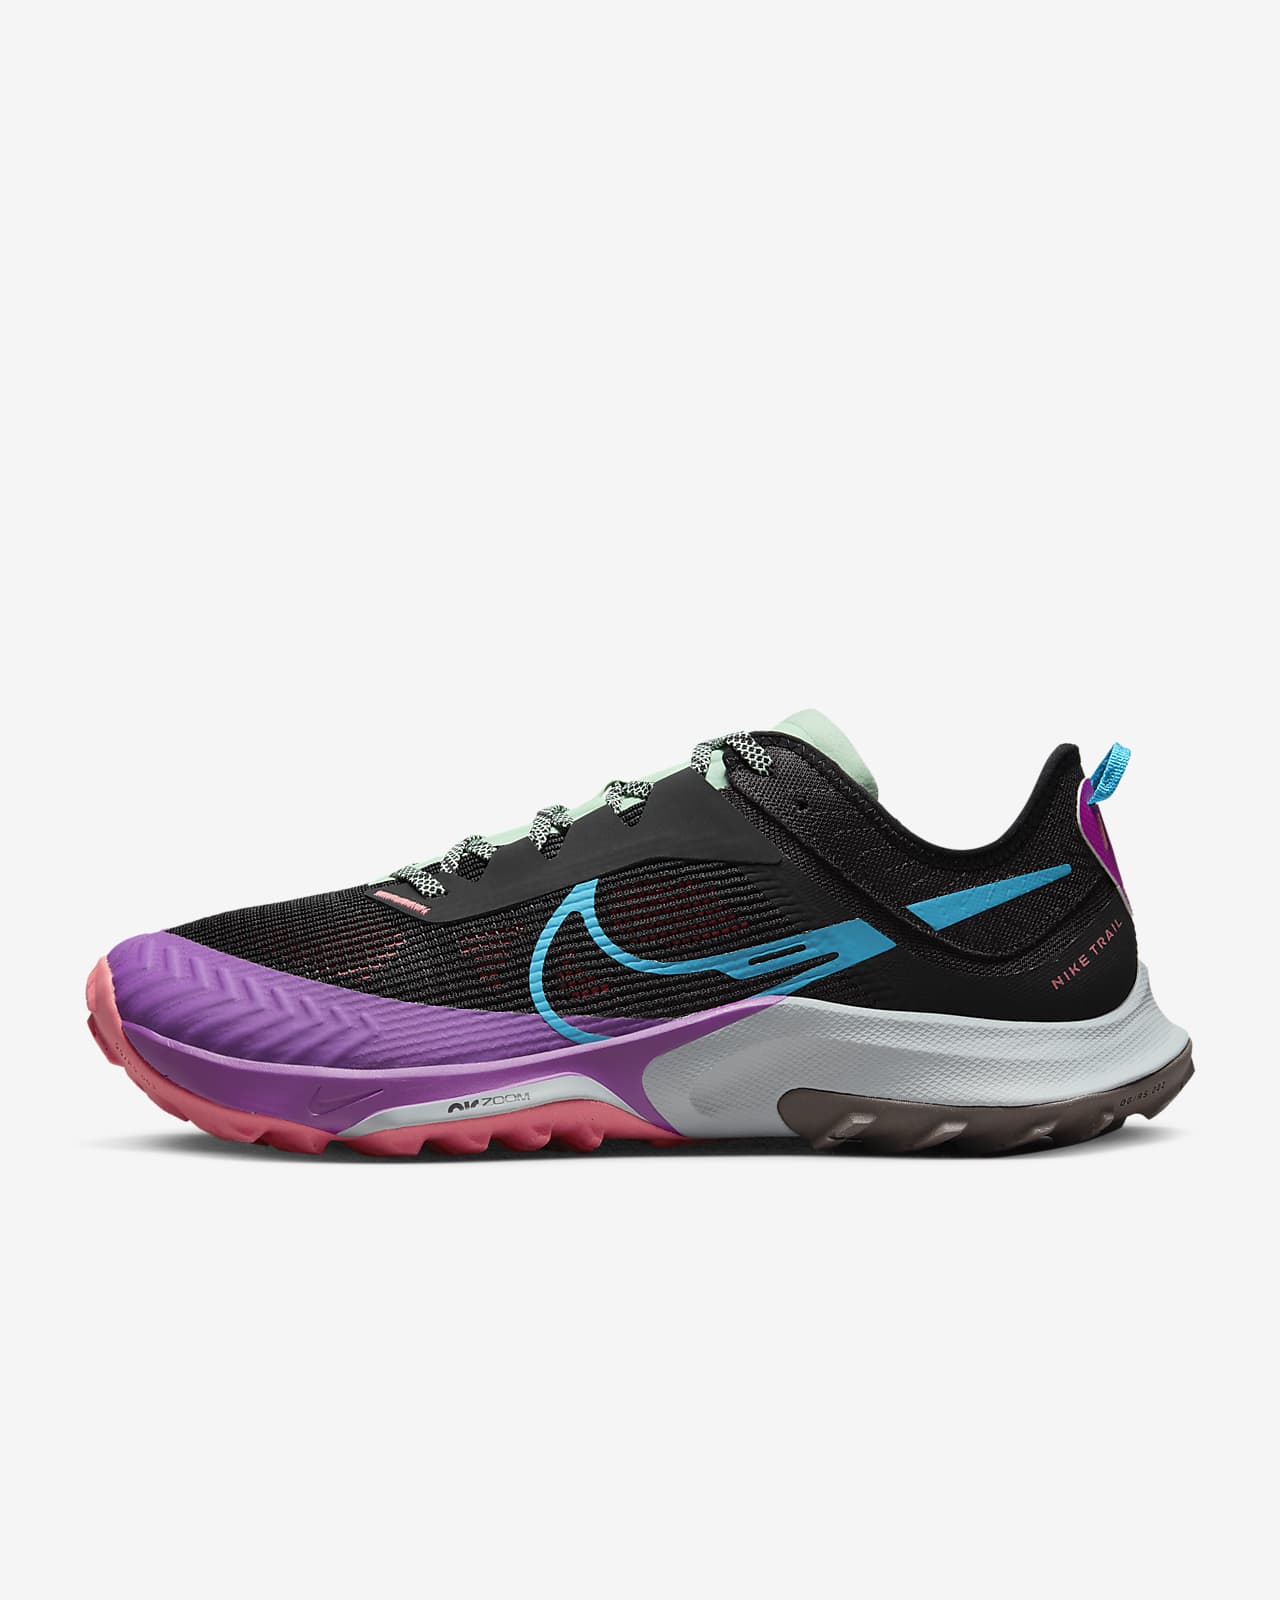 Ανδρικά παπούτσια για τρέξιμο σε ανώμαλο δρόμο Nike Air Zoom Terra Kiger 8